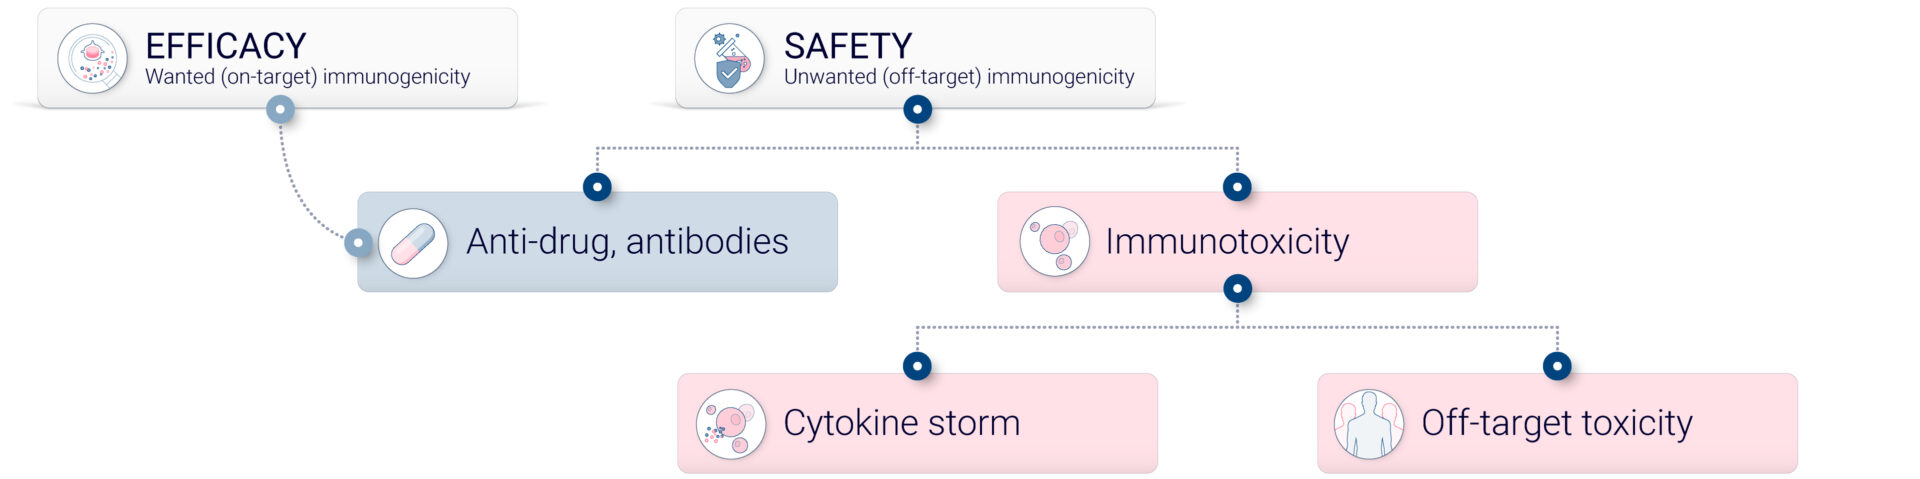 Understanding off-target immunogenicity